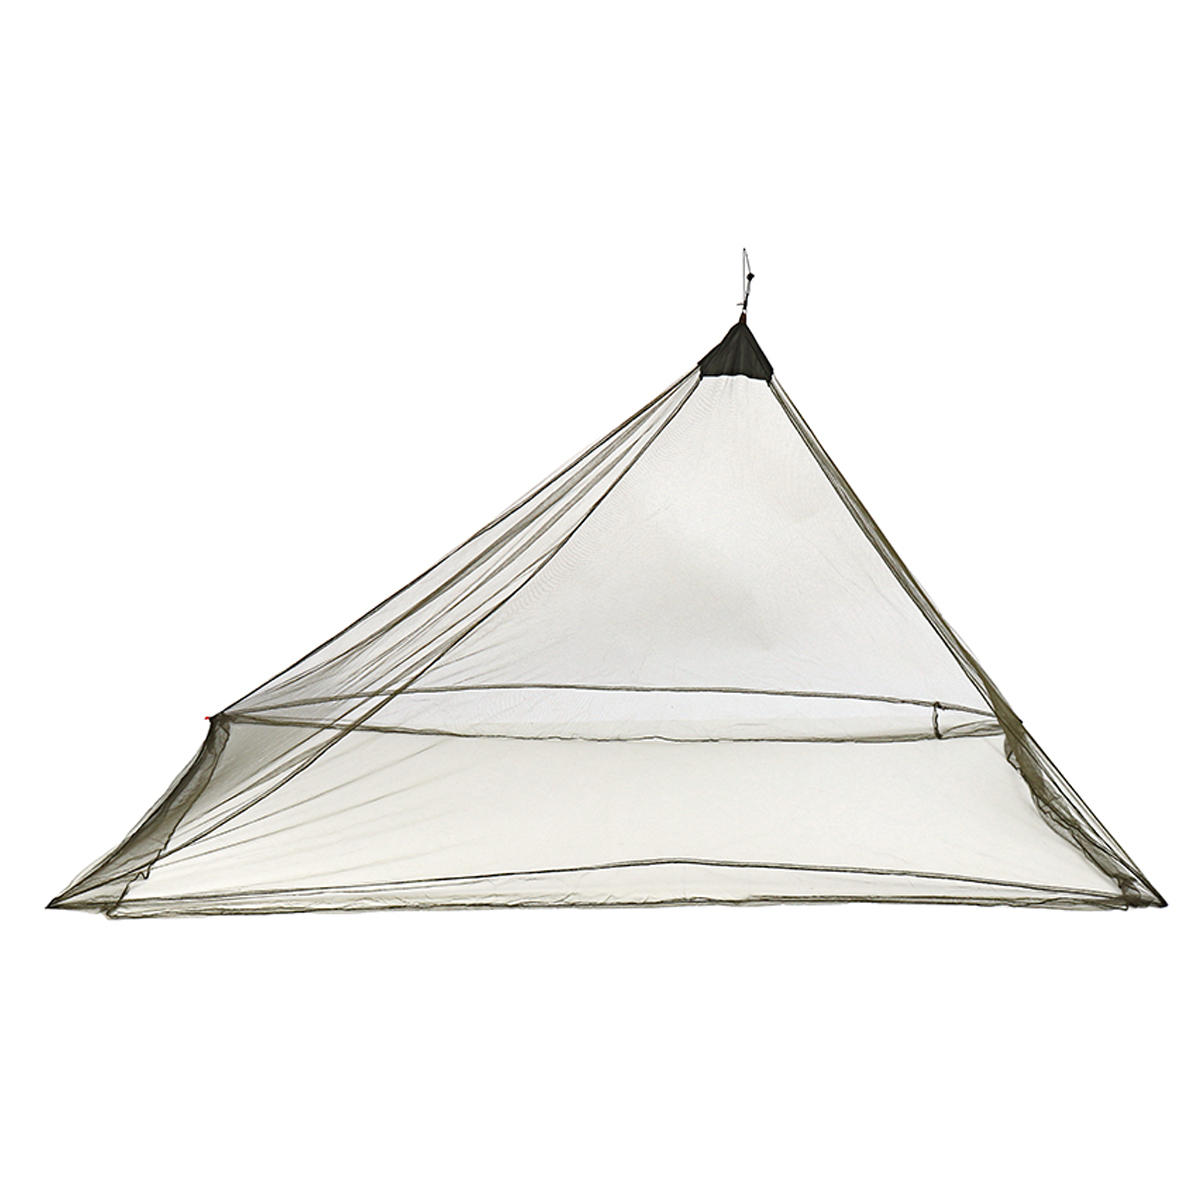 Kamp sivrisinek ağı hafif taşınabilir sivrisinek çadırı açık hava çadırı anti sivrisinek ağı.